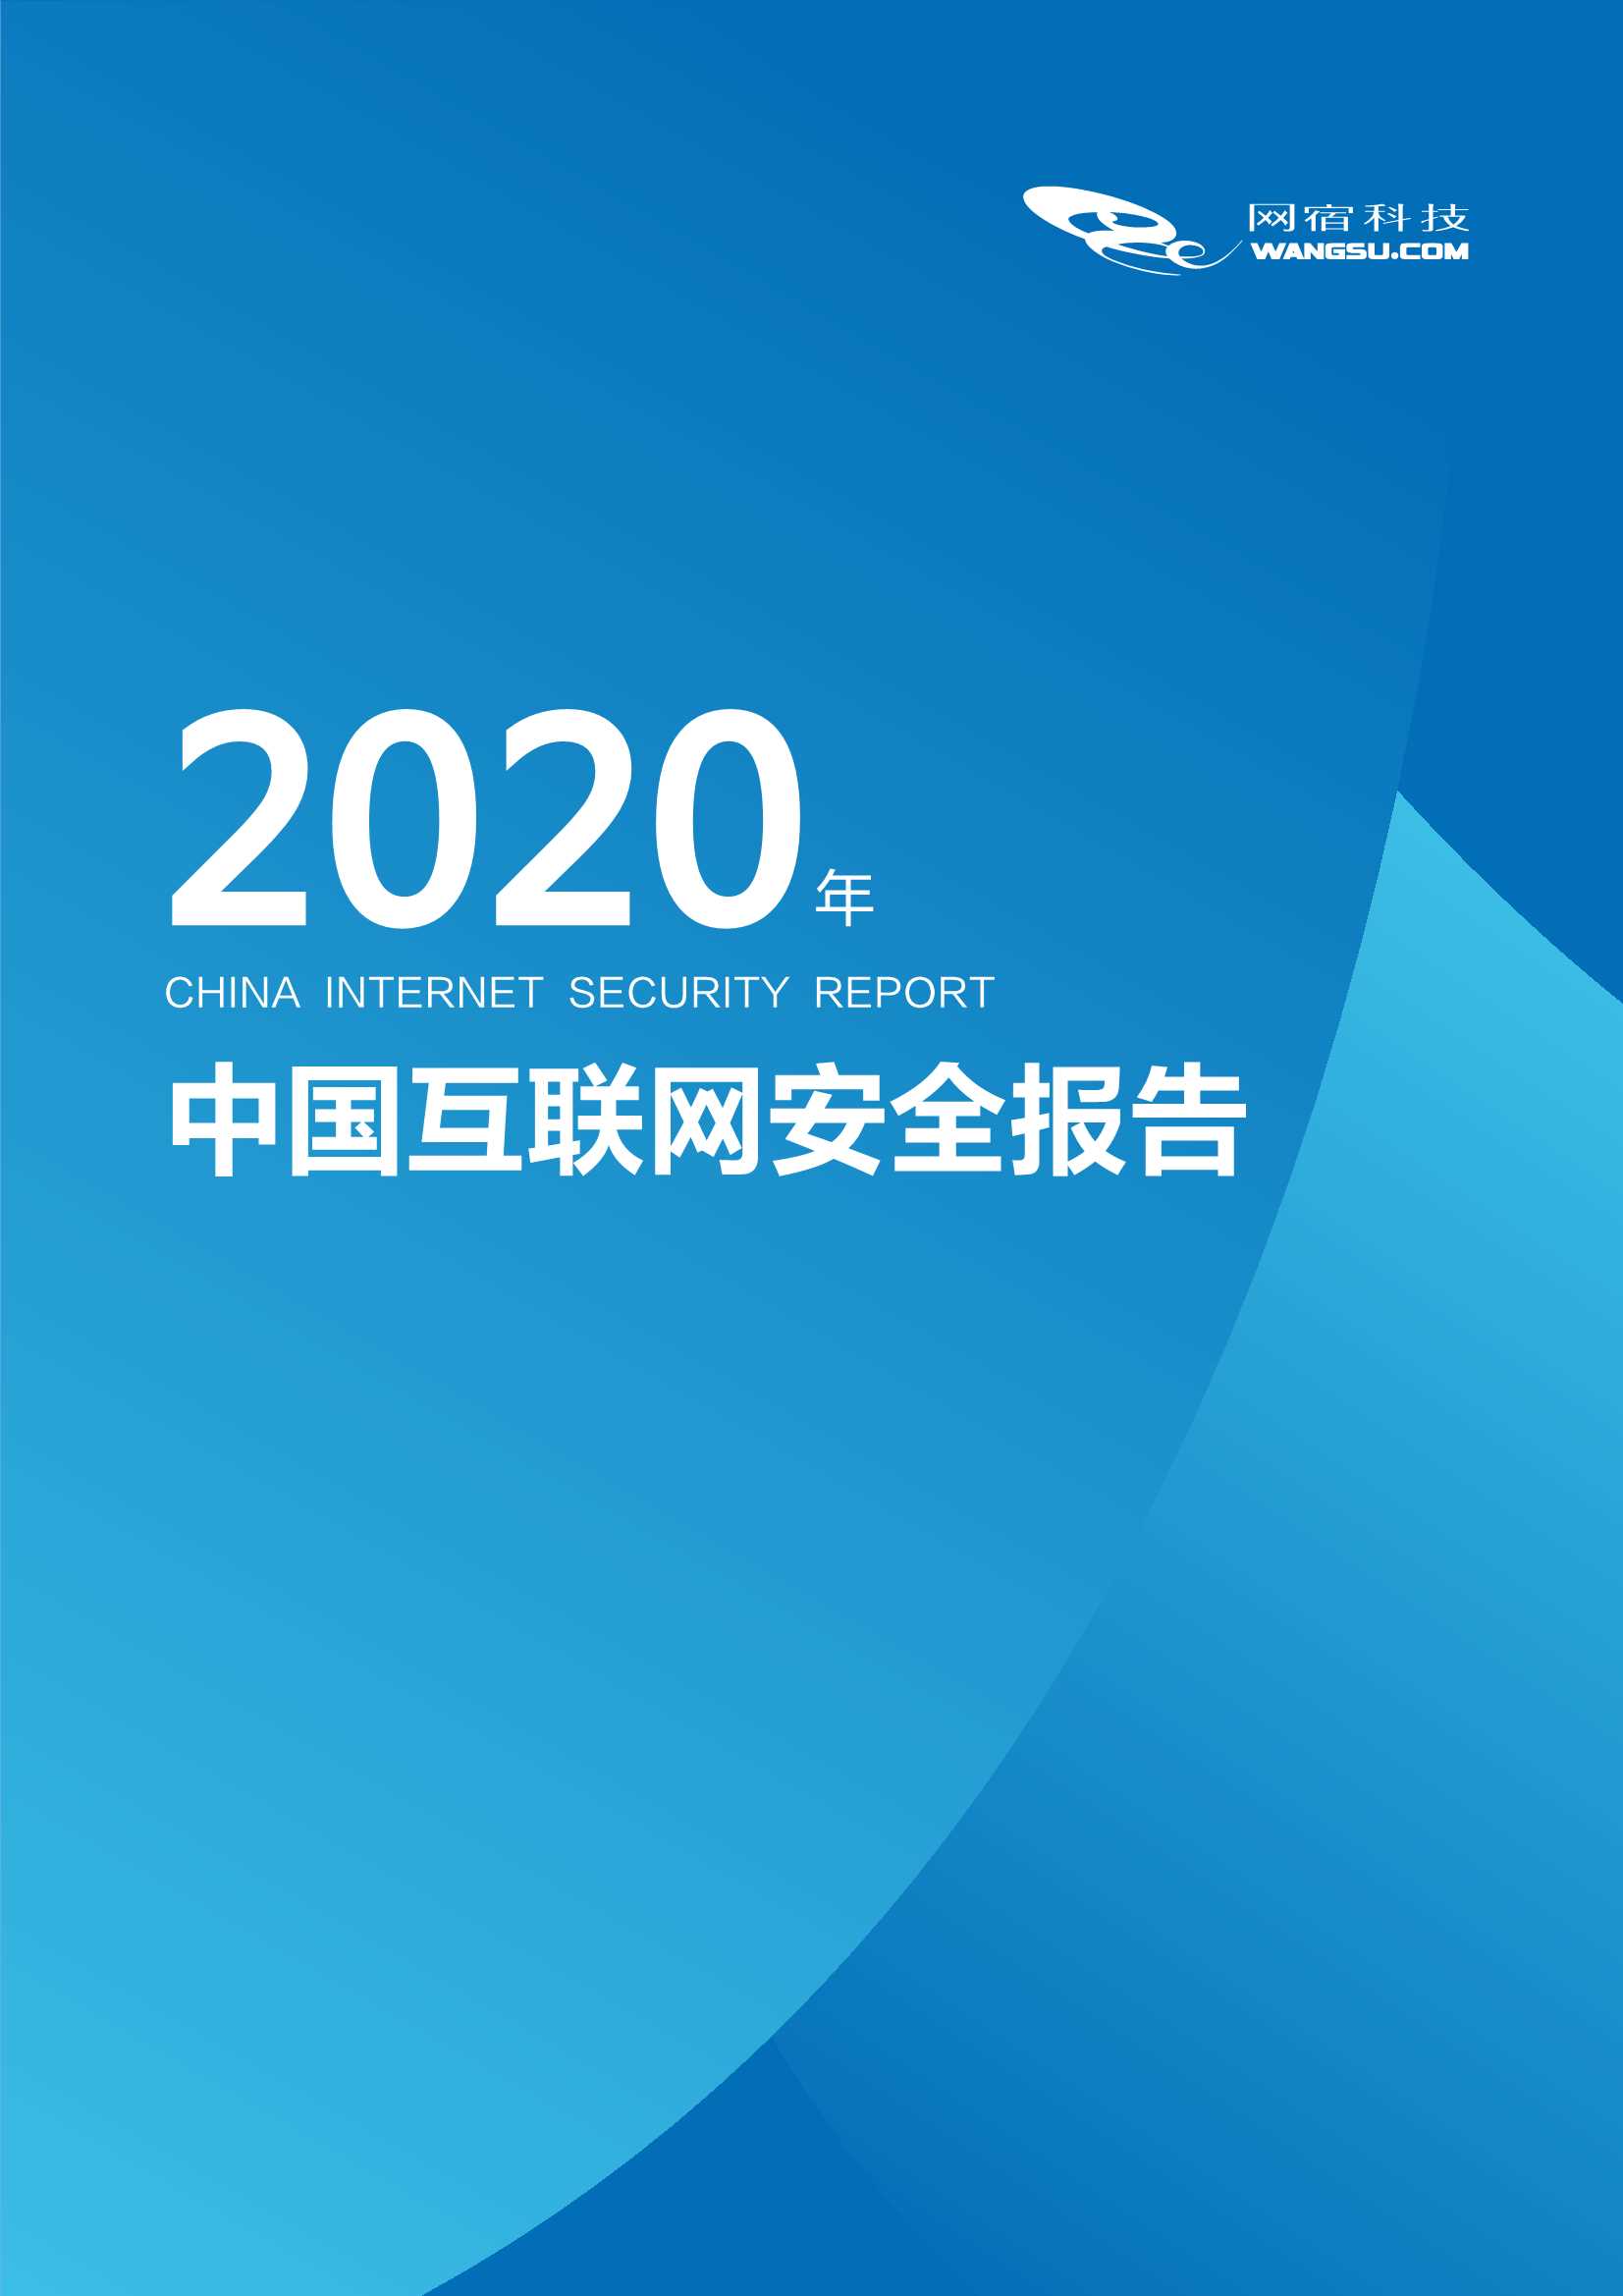 网宿科技-中国互联网安全报告（2020年）-2021.06-25页